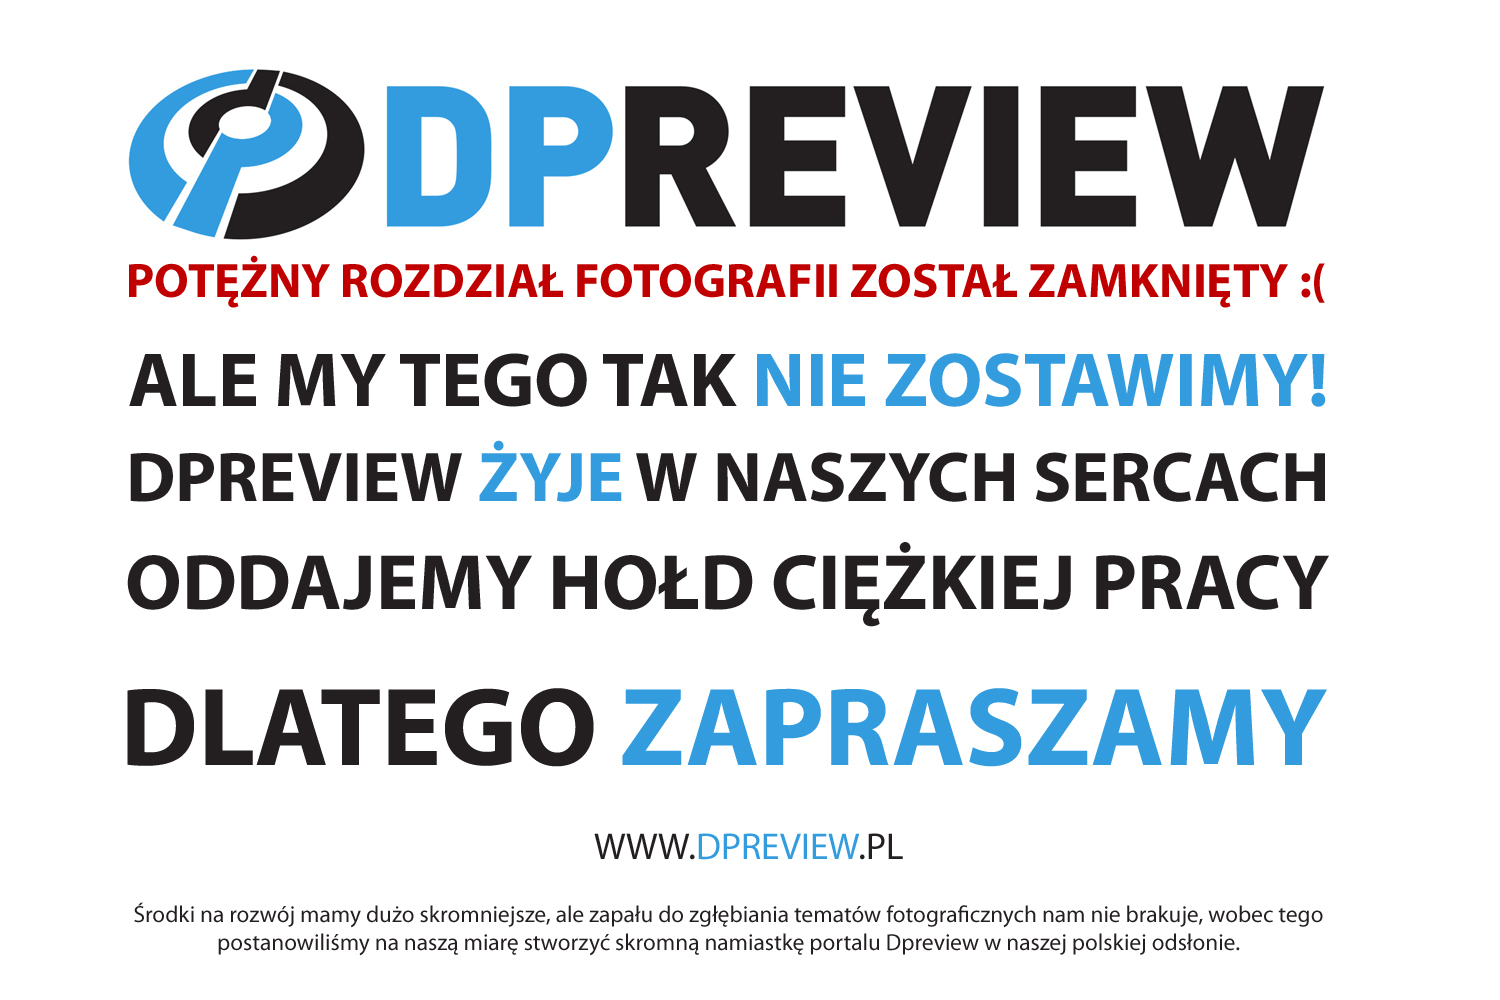 Oddajemy hołd ciężkiej pracy autorom serwisu fotograficznego DPREVIEW - www.dpreview.pl